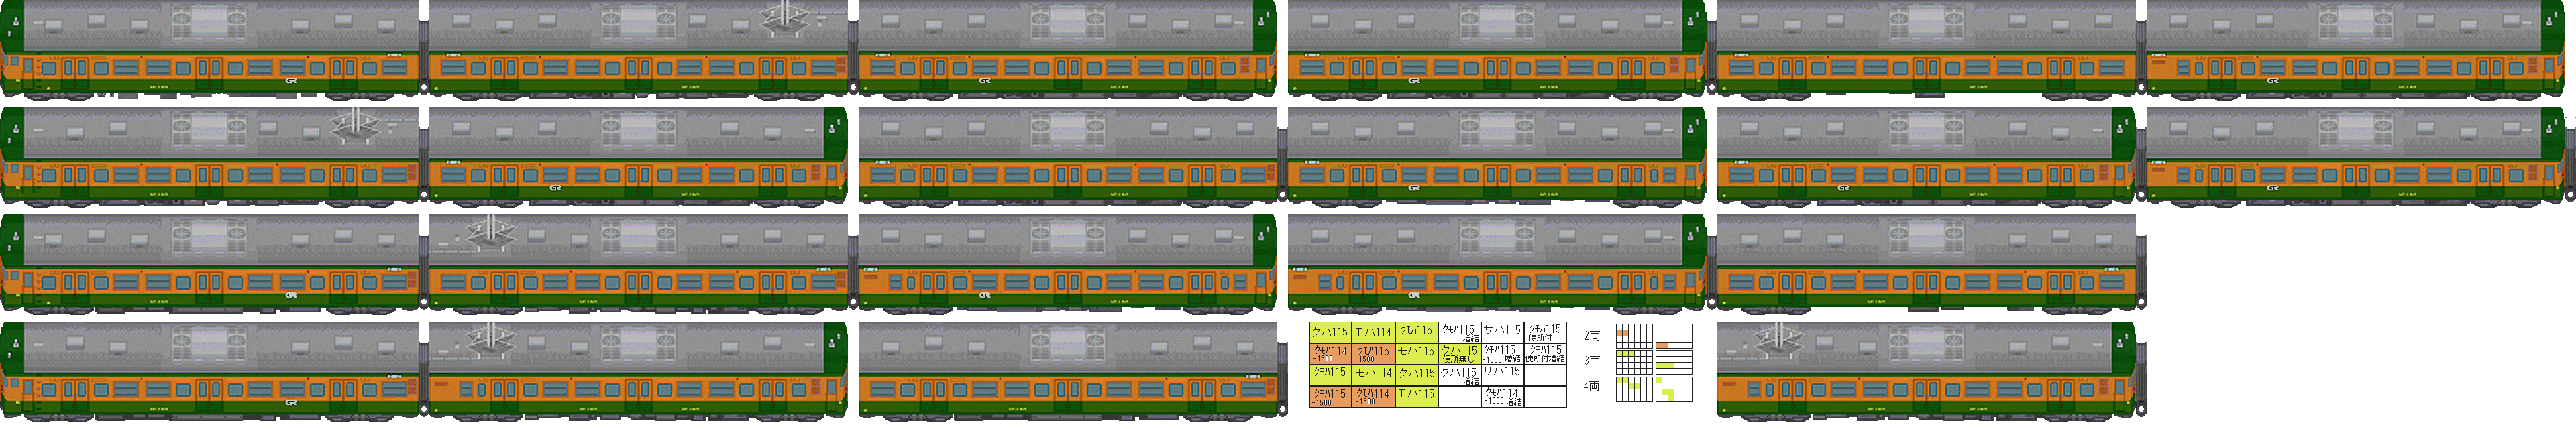 32 32規格列車素材 Simulation Country Gapan 月本國